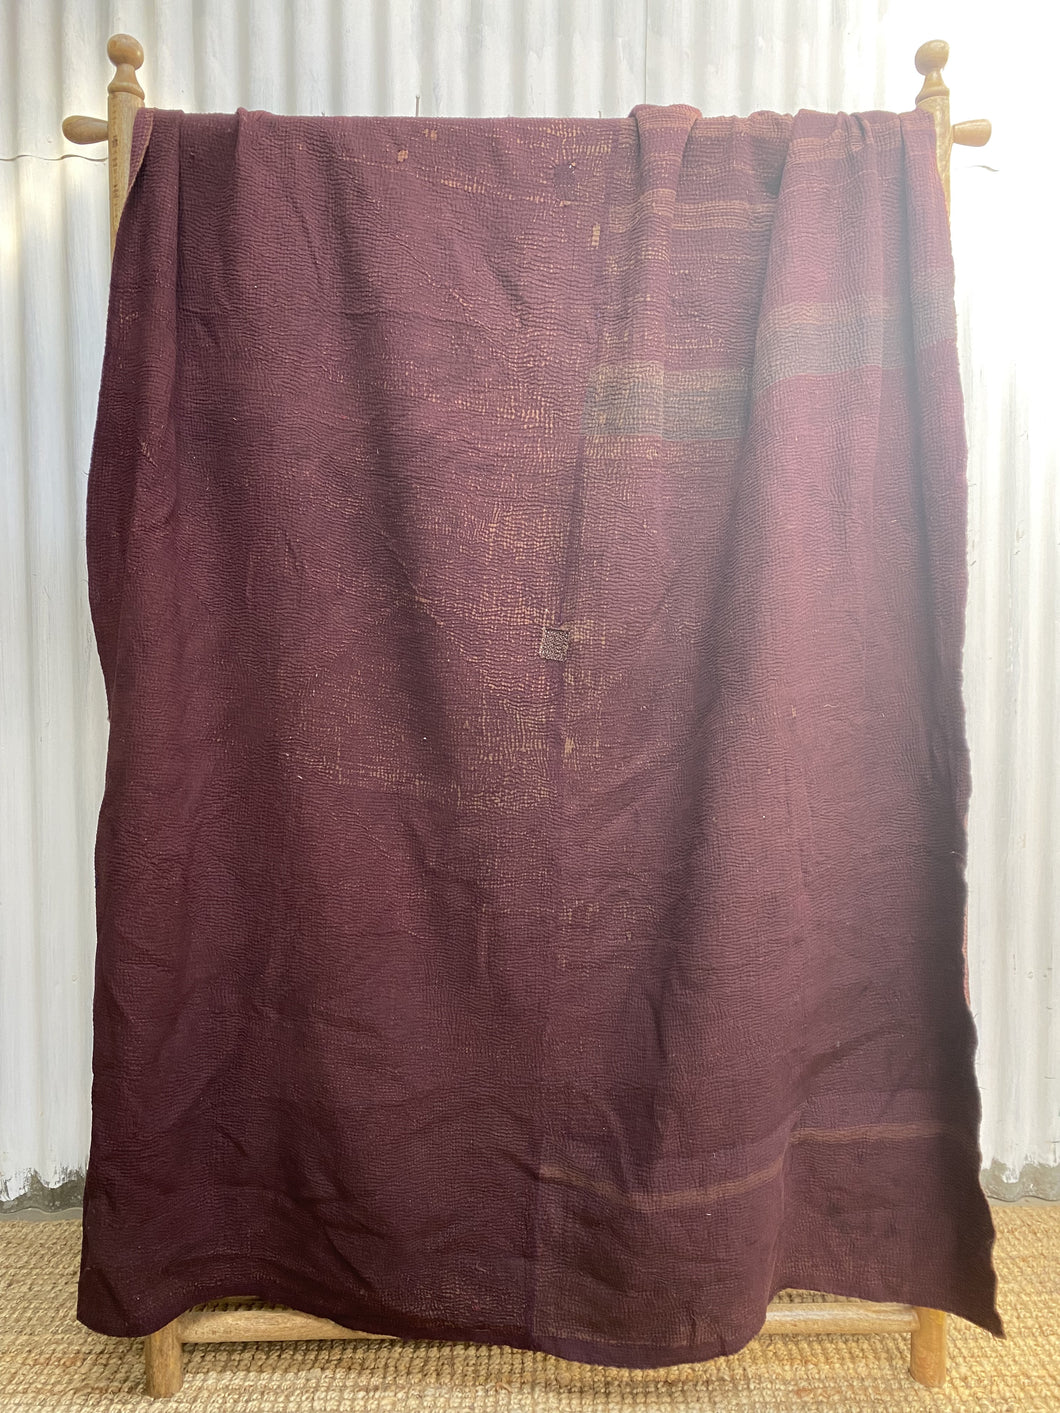 Vintage Kantha Quilt #3